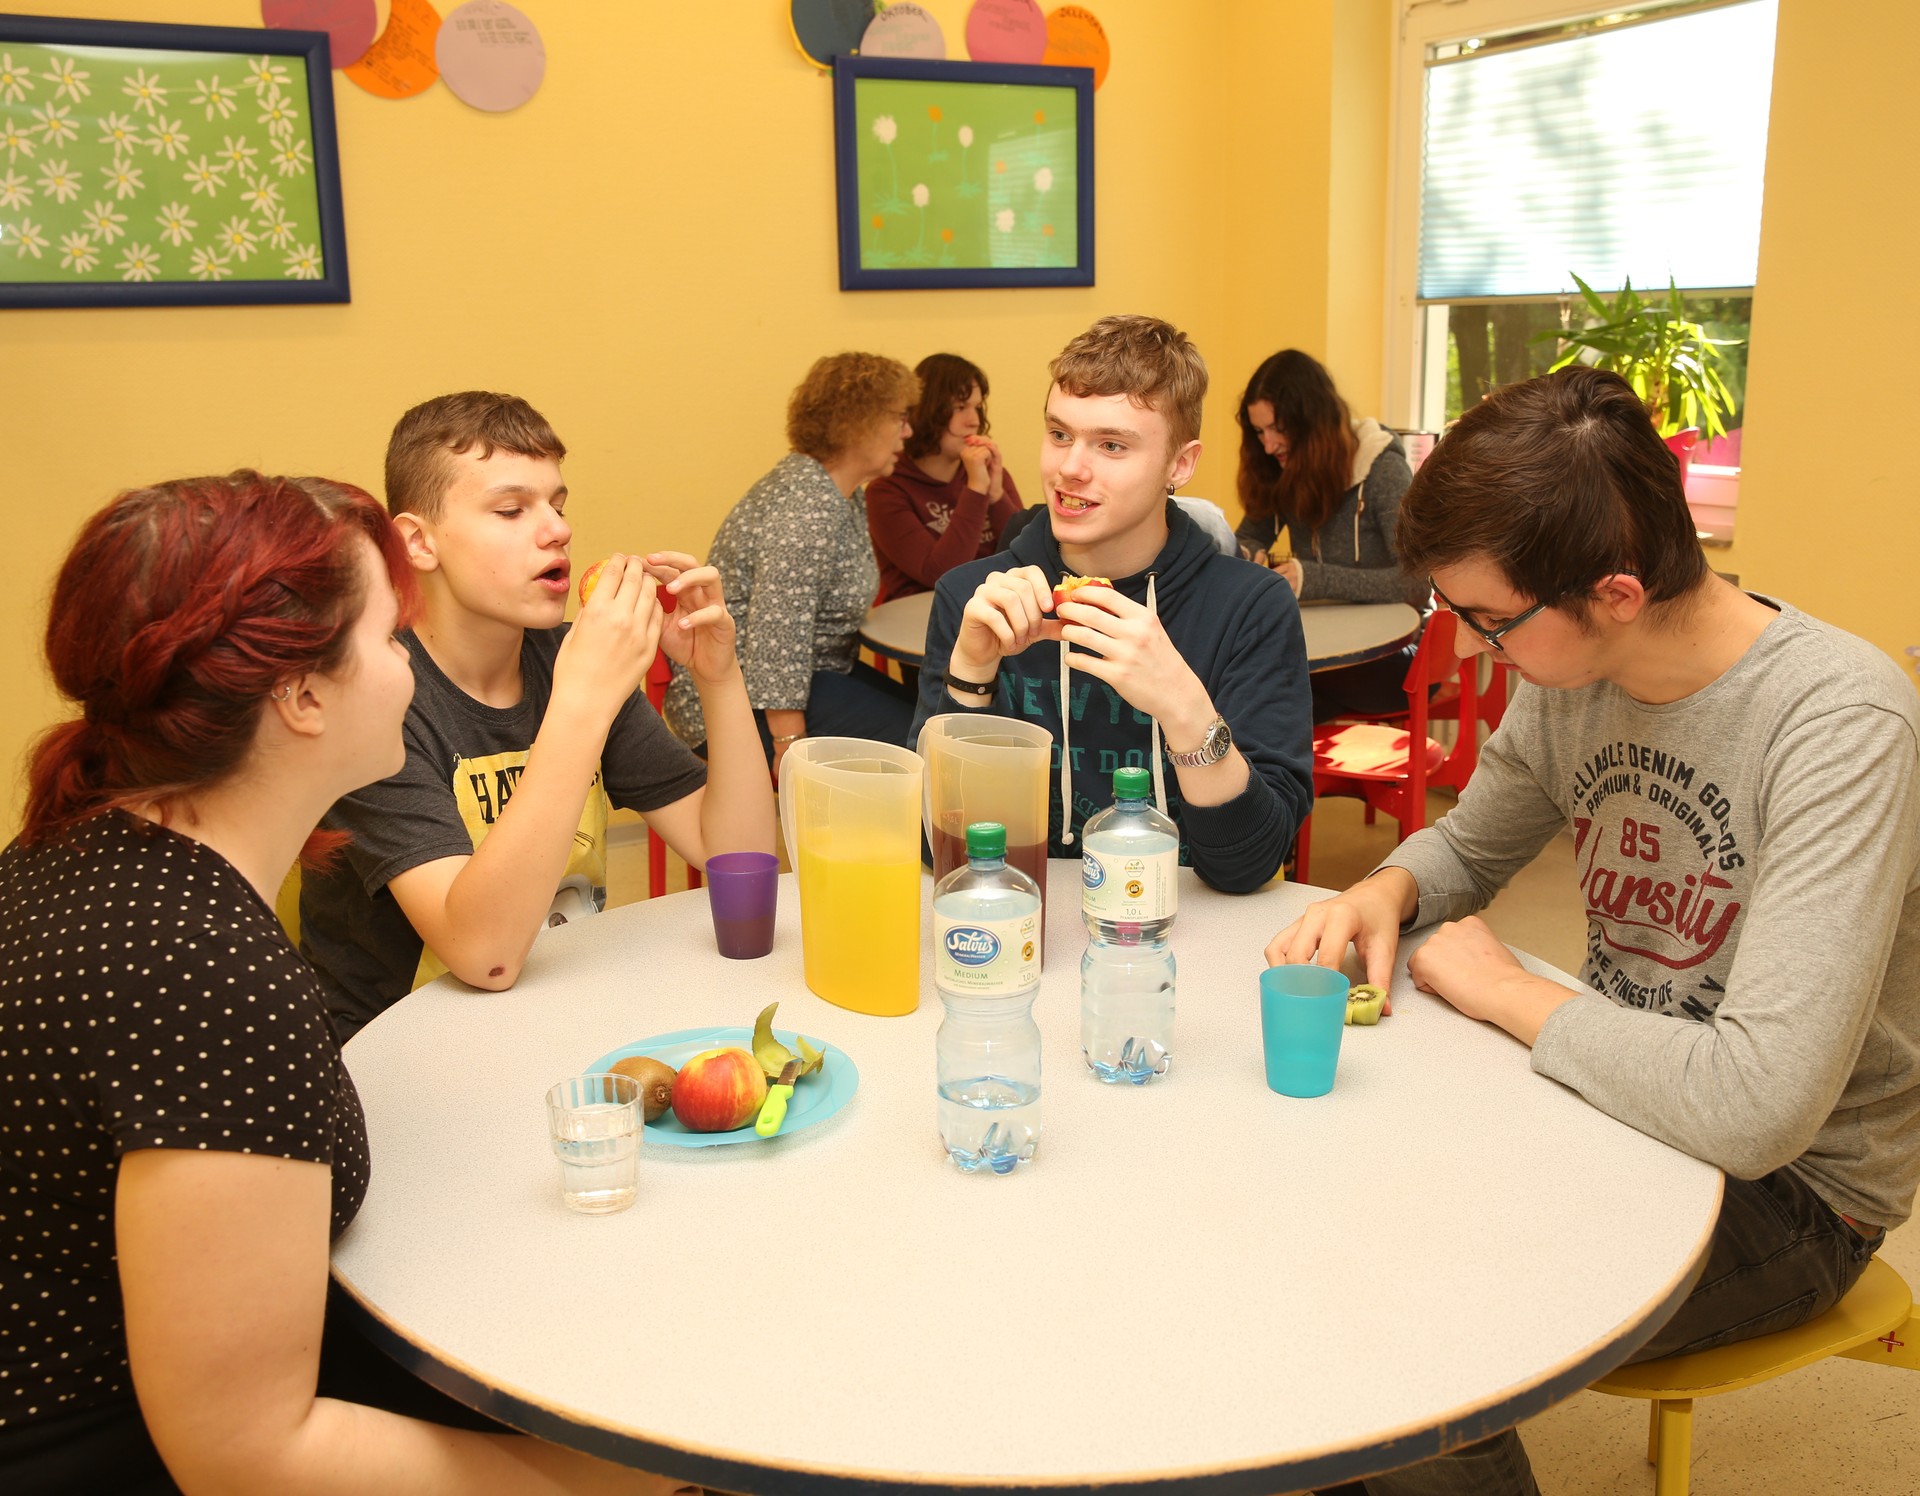 Vier Personen sitzen an einem runden Tisch und essen gemeinsam. Im Hintergrund steht ein weiterer runder Tisch, an dem Menschen gemeinsam essen